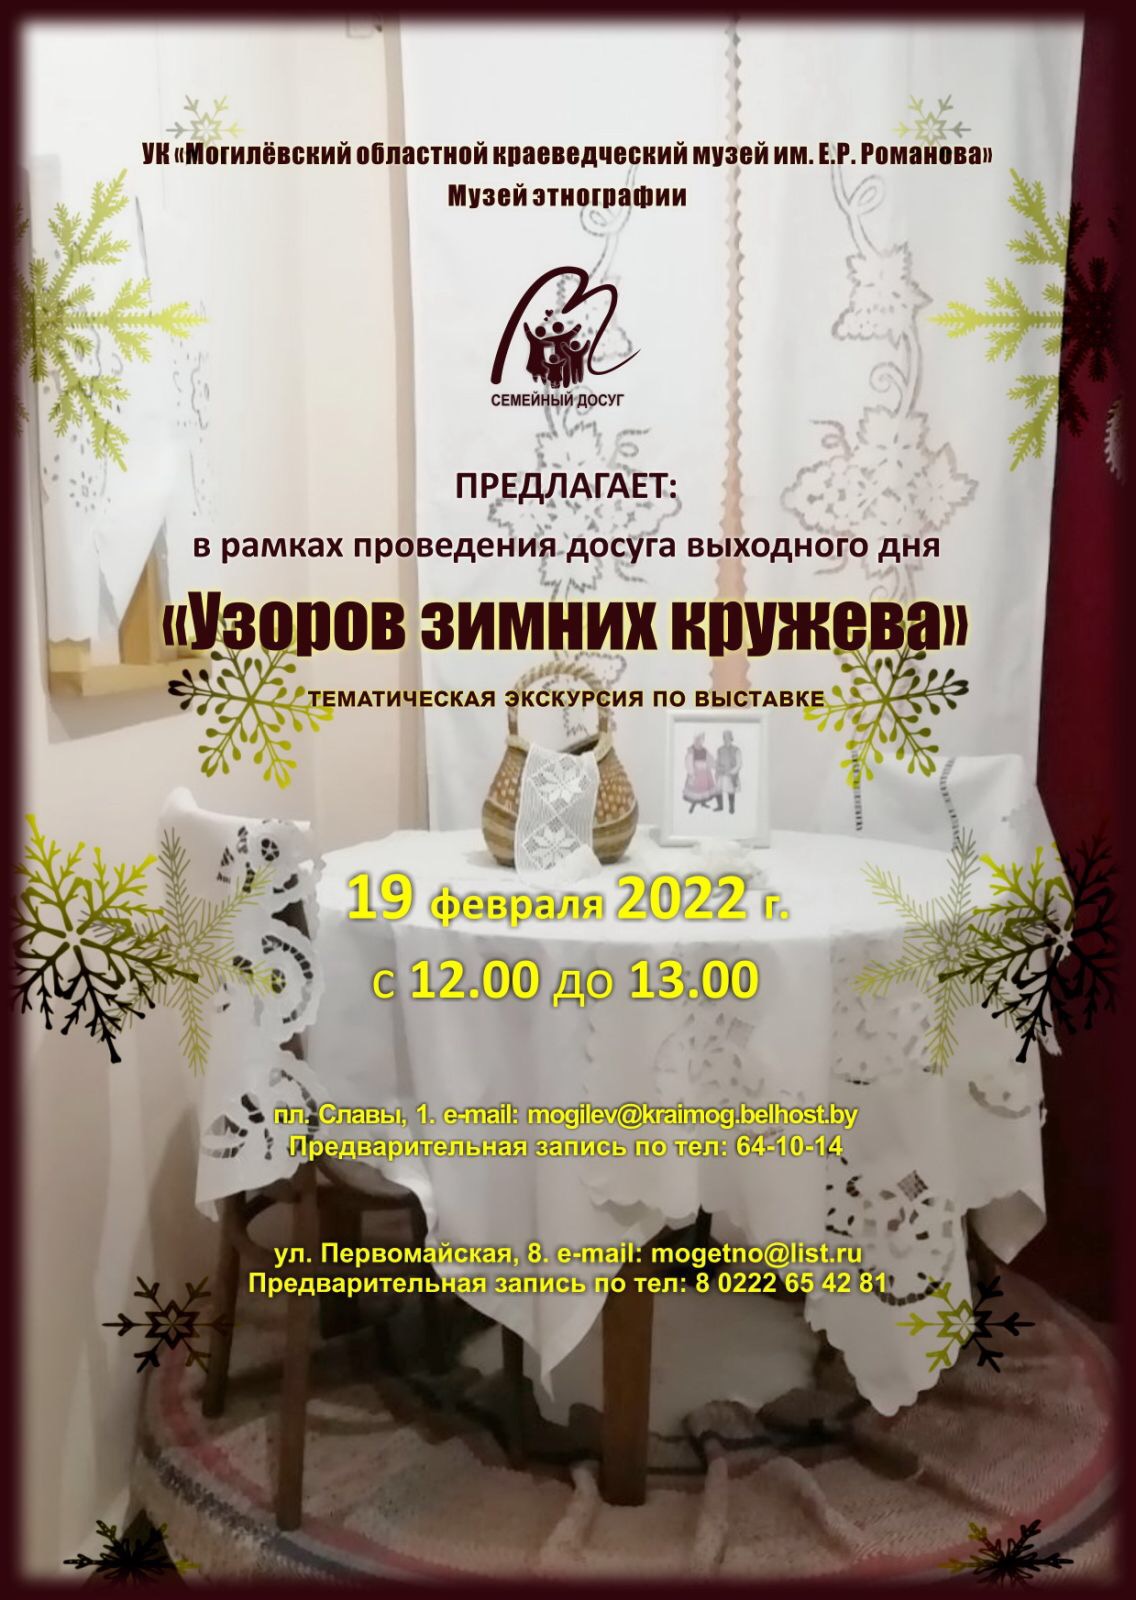 На семейный досуг выходного дня приглашают могилевчан областной краеведческий музей и музей этнографии